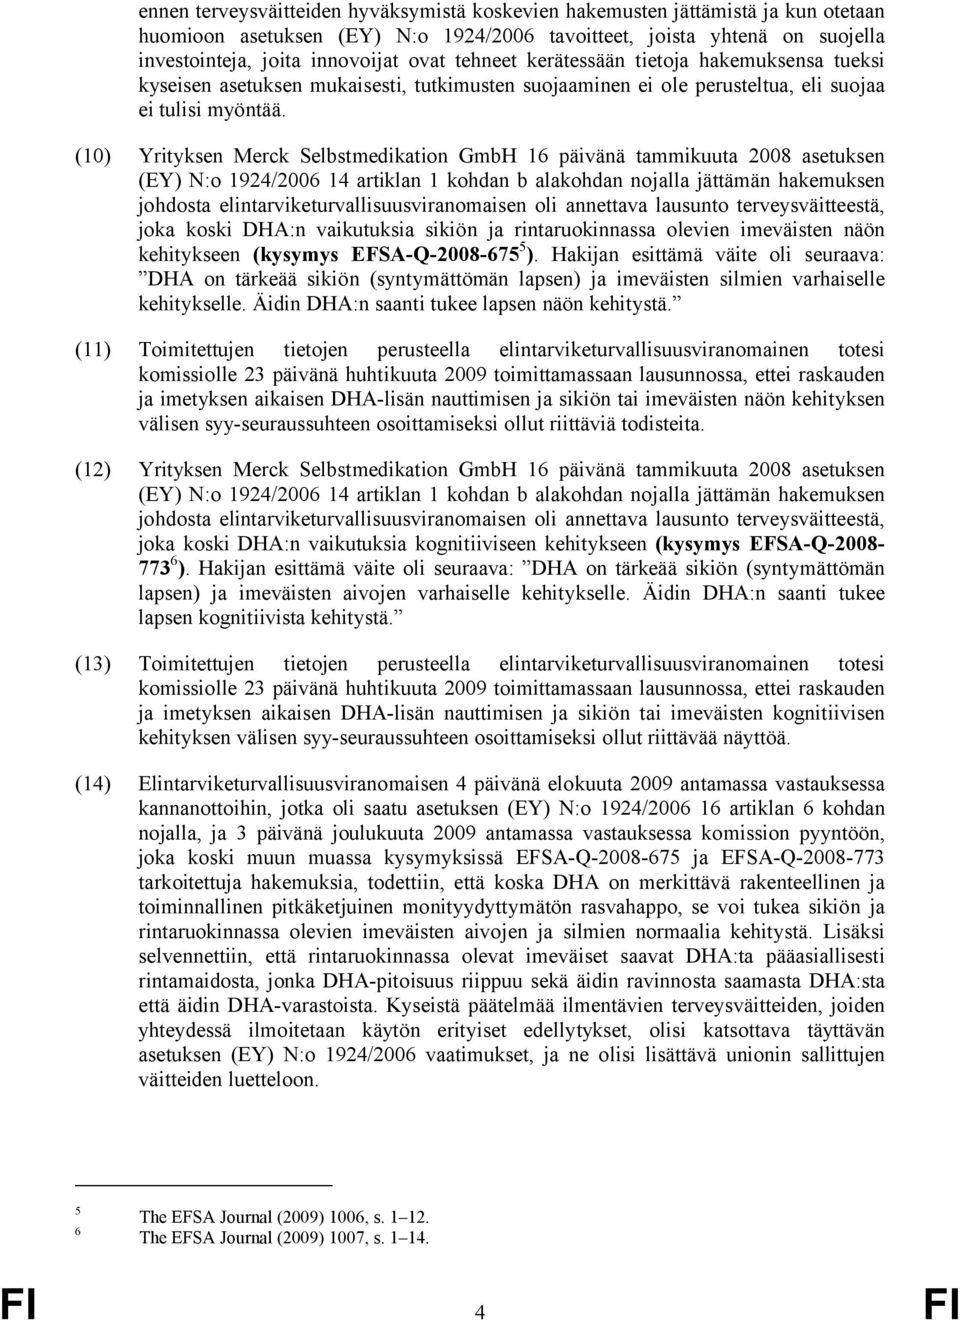 (10) Yrityksen Merck Selbstmedikation GmbH 16 päivänä tammikuuta 2008 asetuksen (EY) N:o 1924/2006 14 artiklan 1 kohdan b alakohdan nojalla jättämän hakemuksen johdosta